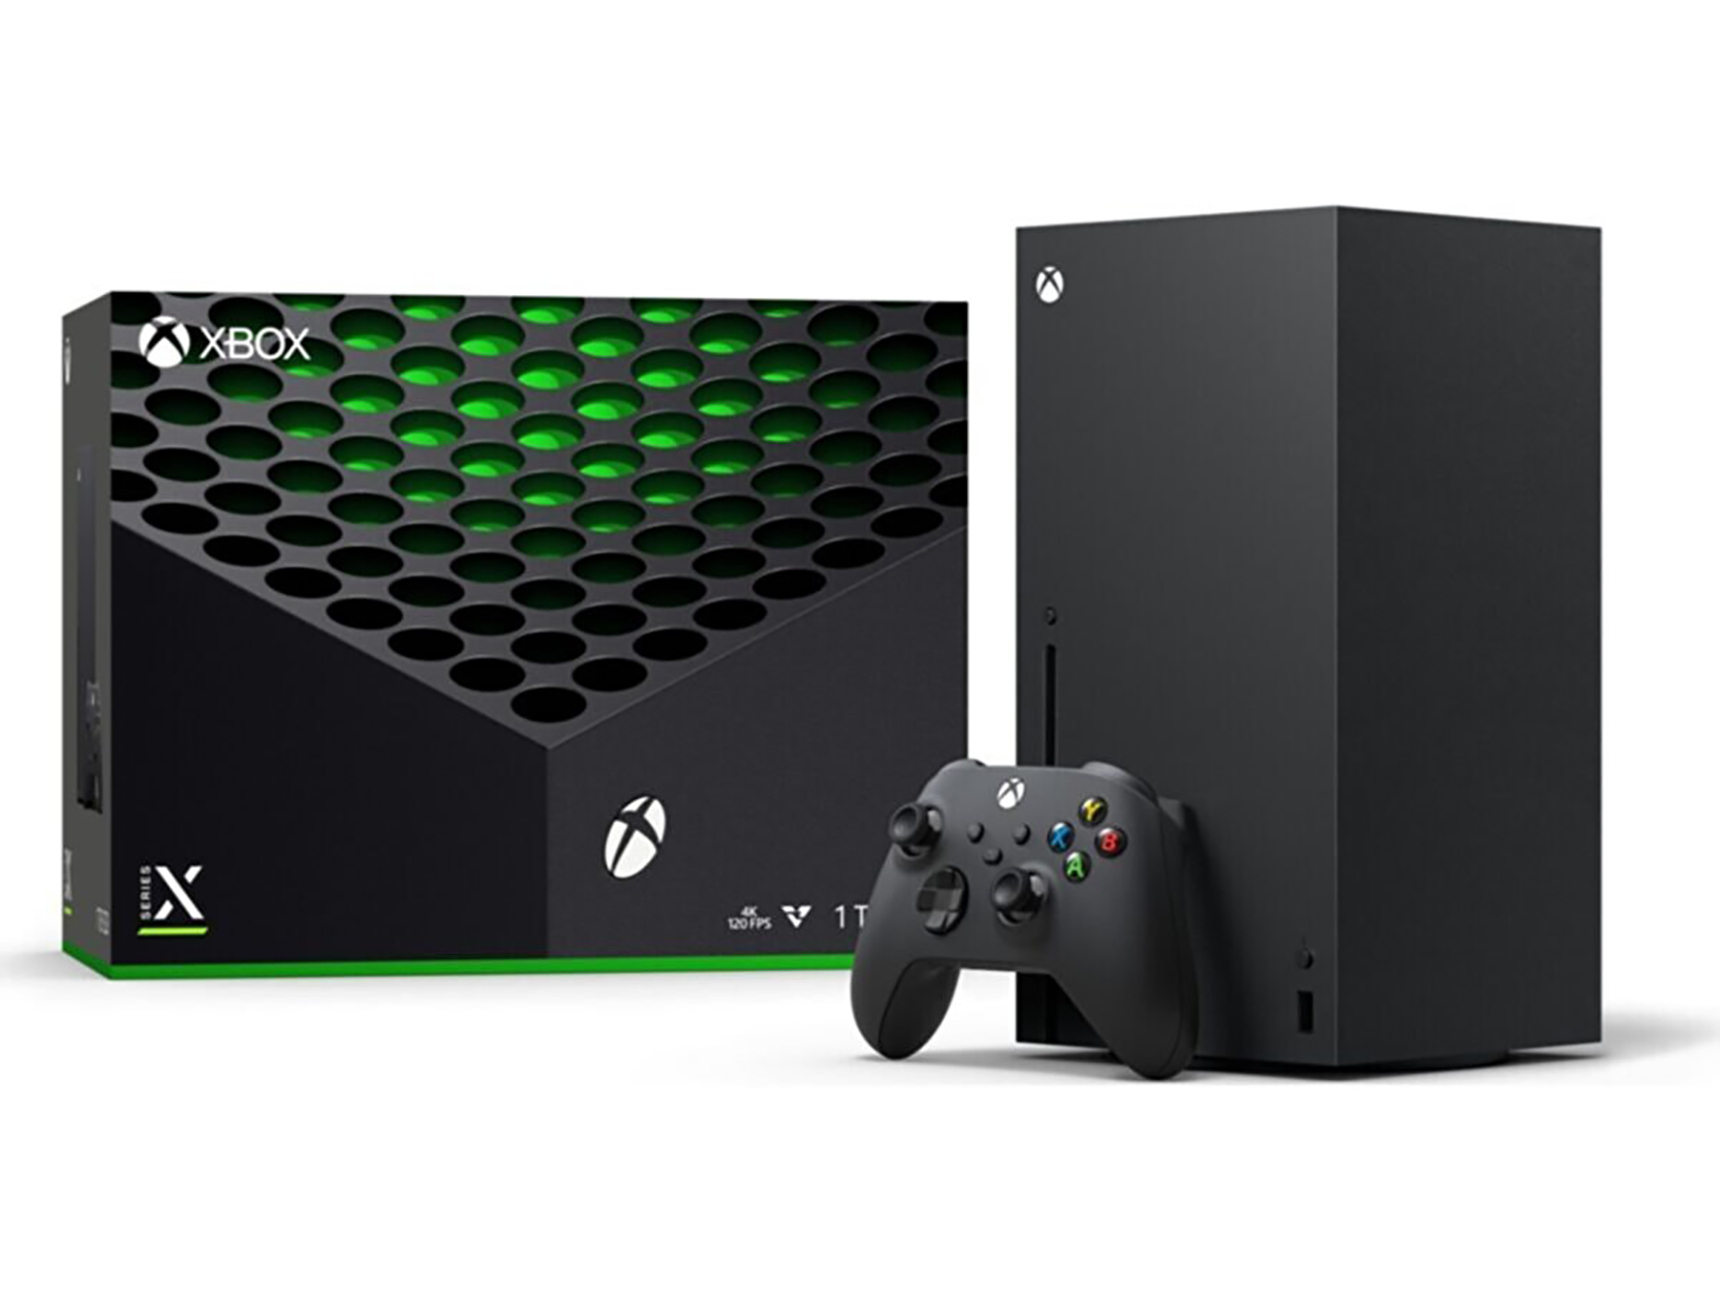 Xbox series x дата выхода в россии. Игровая приставка Microsoft Xbox Series x. Microsoft Xbox Series x 1tb. Консоль Microsoft Xbox Series x 1tb (RRT). Xbox 2021.